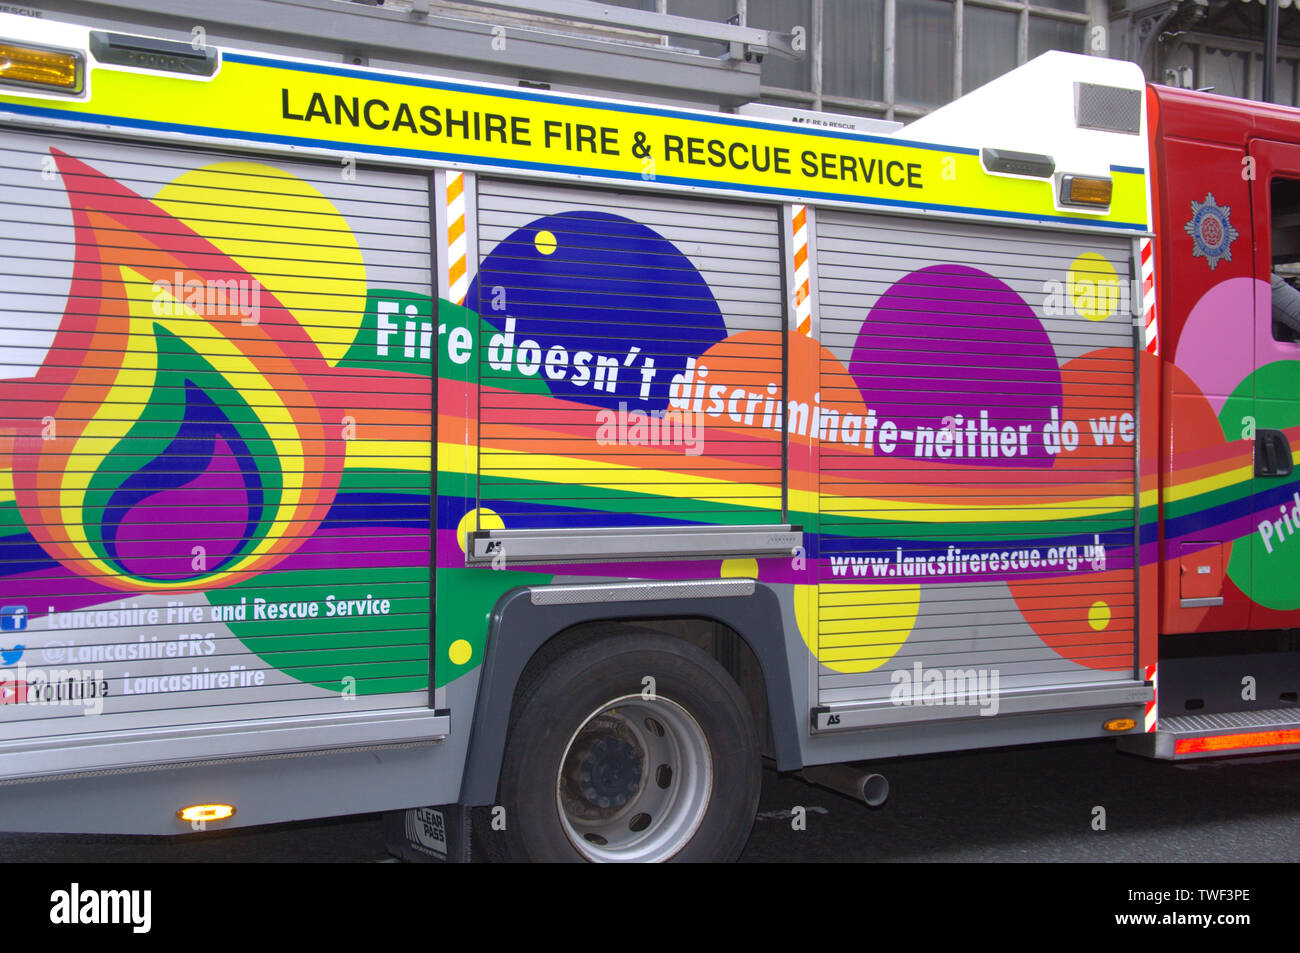 Ein Feuerwehrmotor des Lancashire Fire and Rescue Service, der in Regenbogenfarben in Manchester, UK, LGBT Pride Parade 2018 dekoriert ist Stockfoto